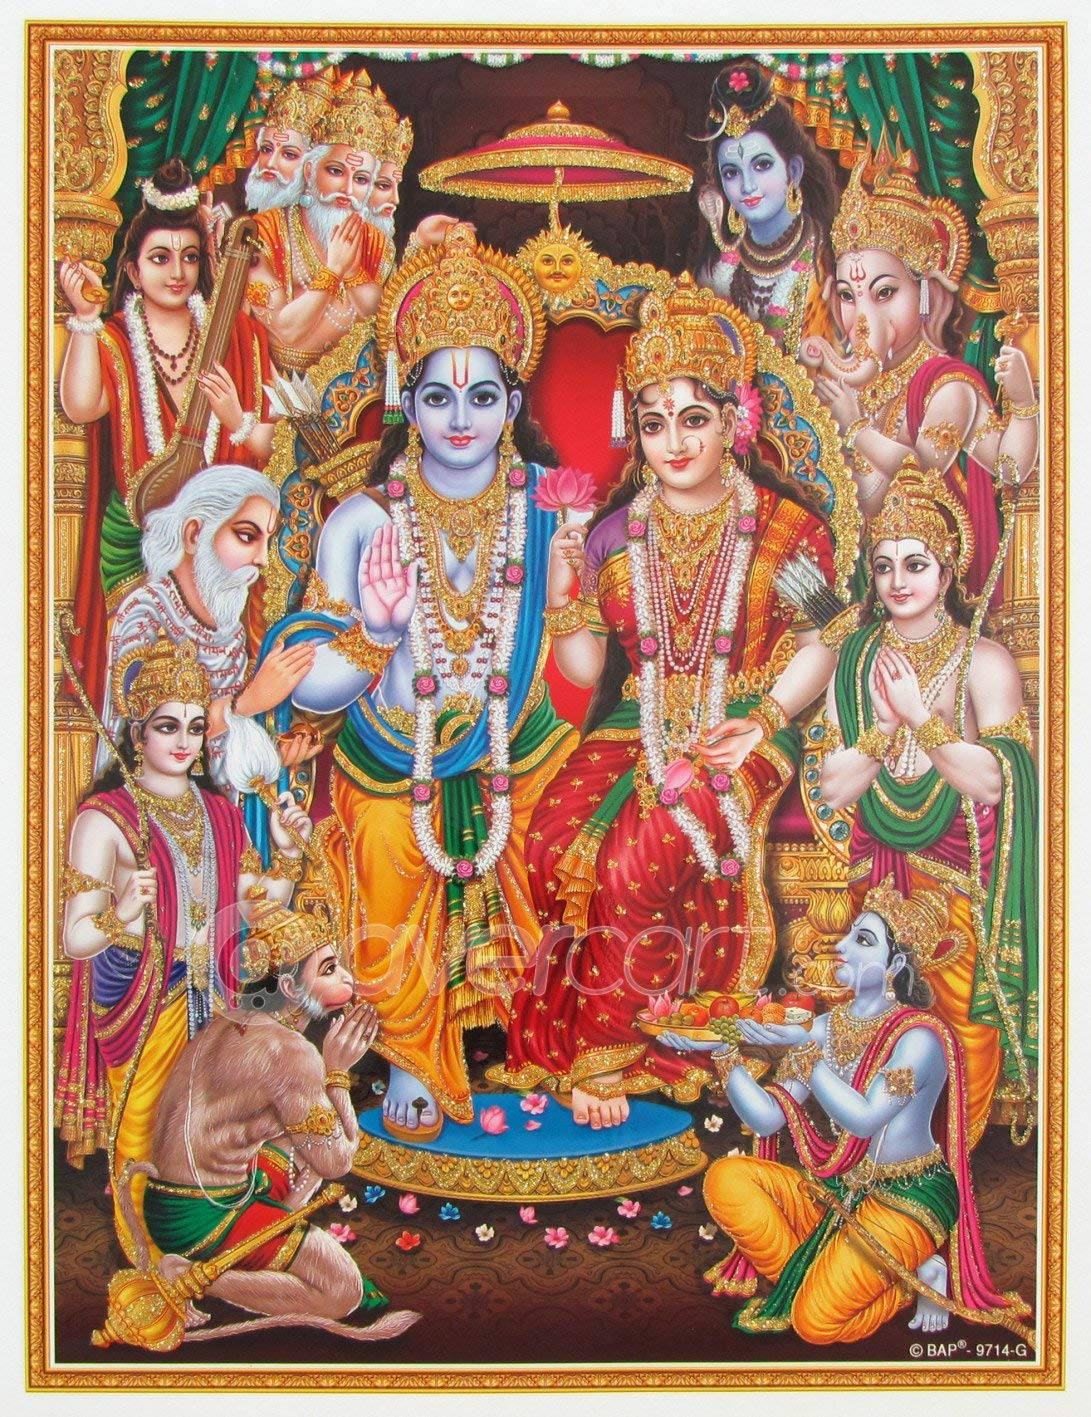 Ram Darbar Framed Illustration Wallpaper